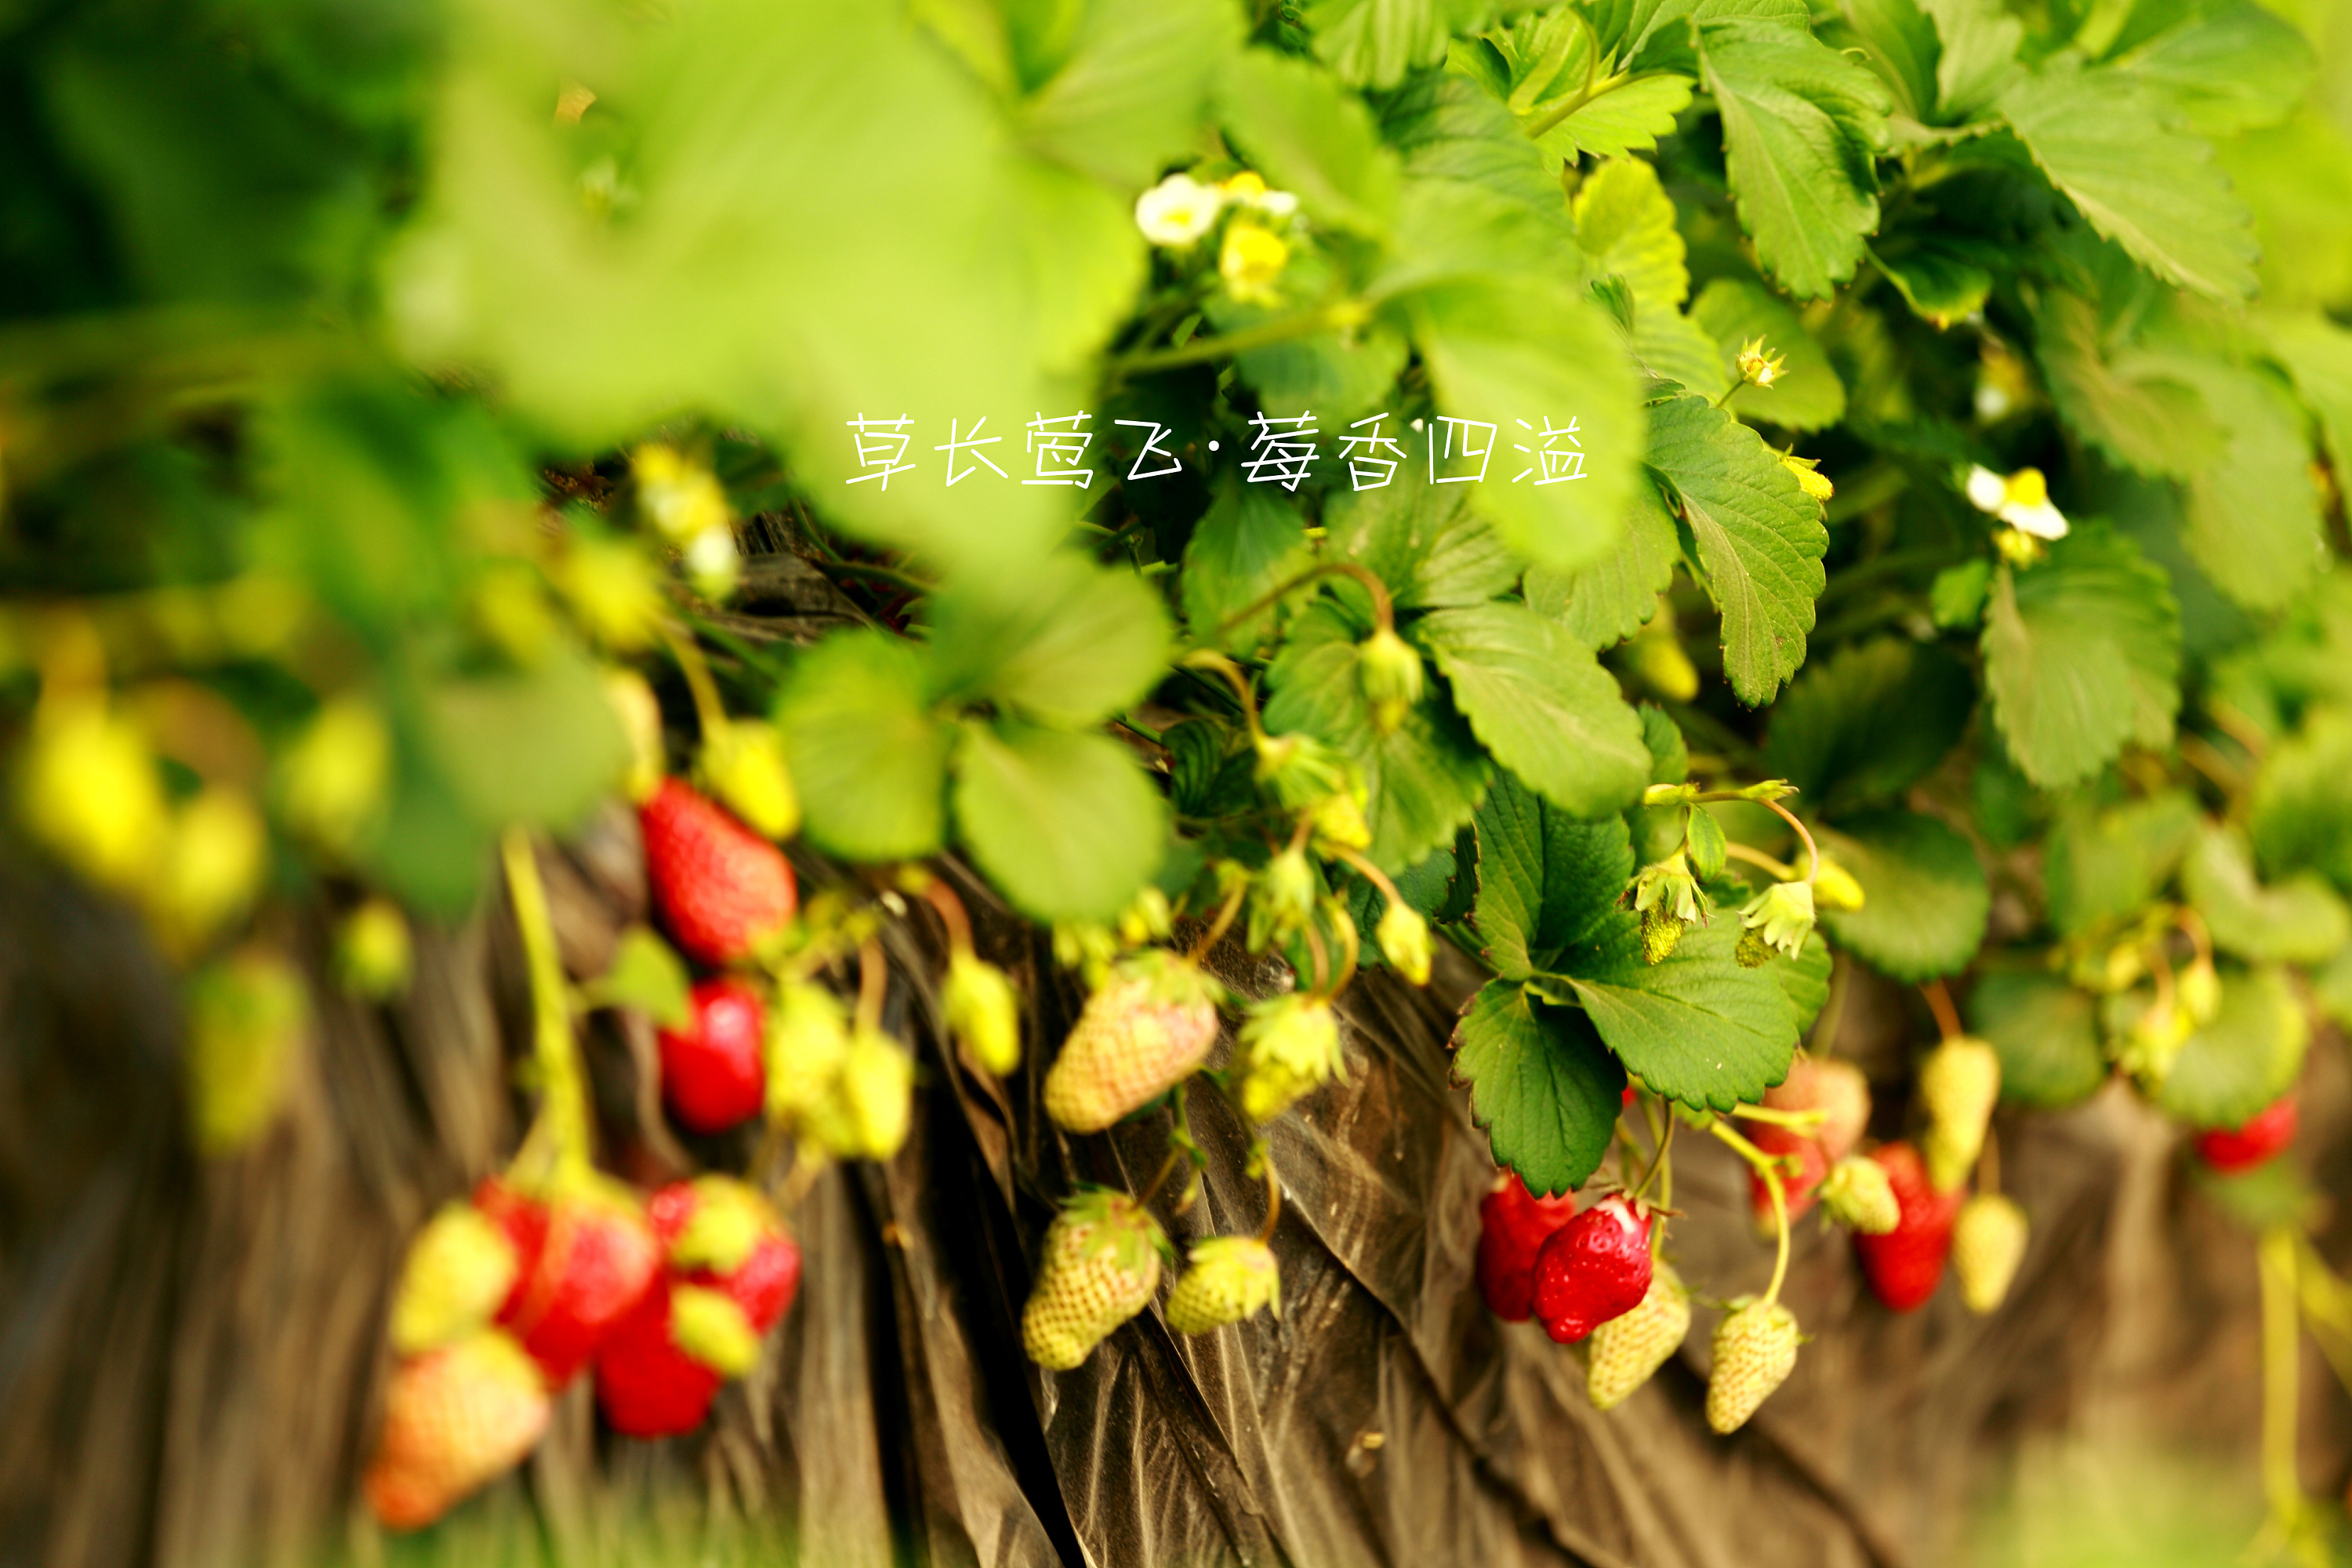 长兴岛的某个草莓园 - 高清图片，堆糖，美图壁纸兴趣社区